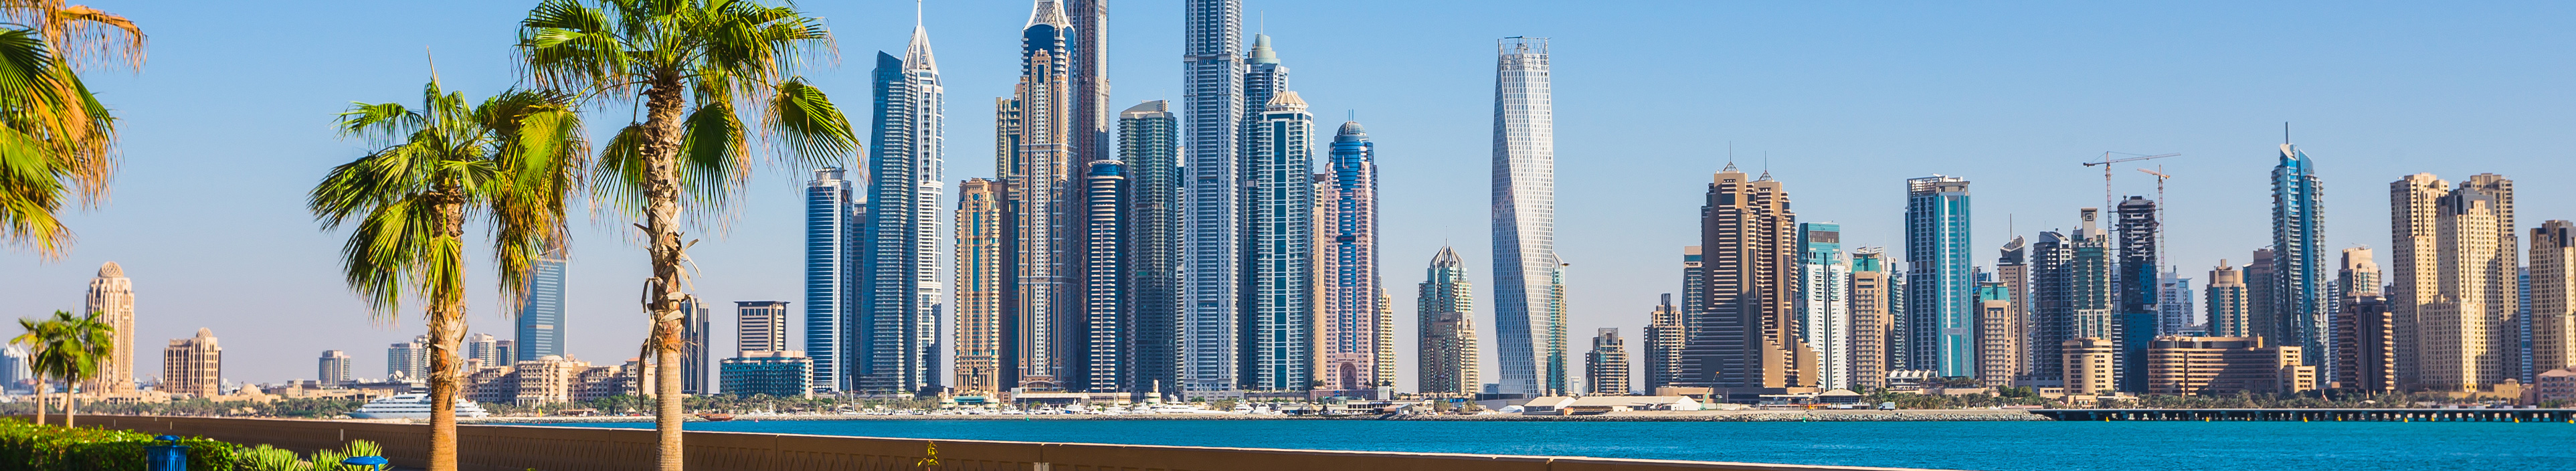 Skyline von Dubai bei einer Pauschalreise.